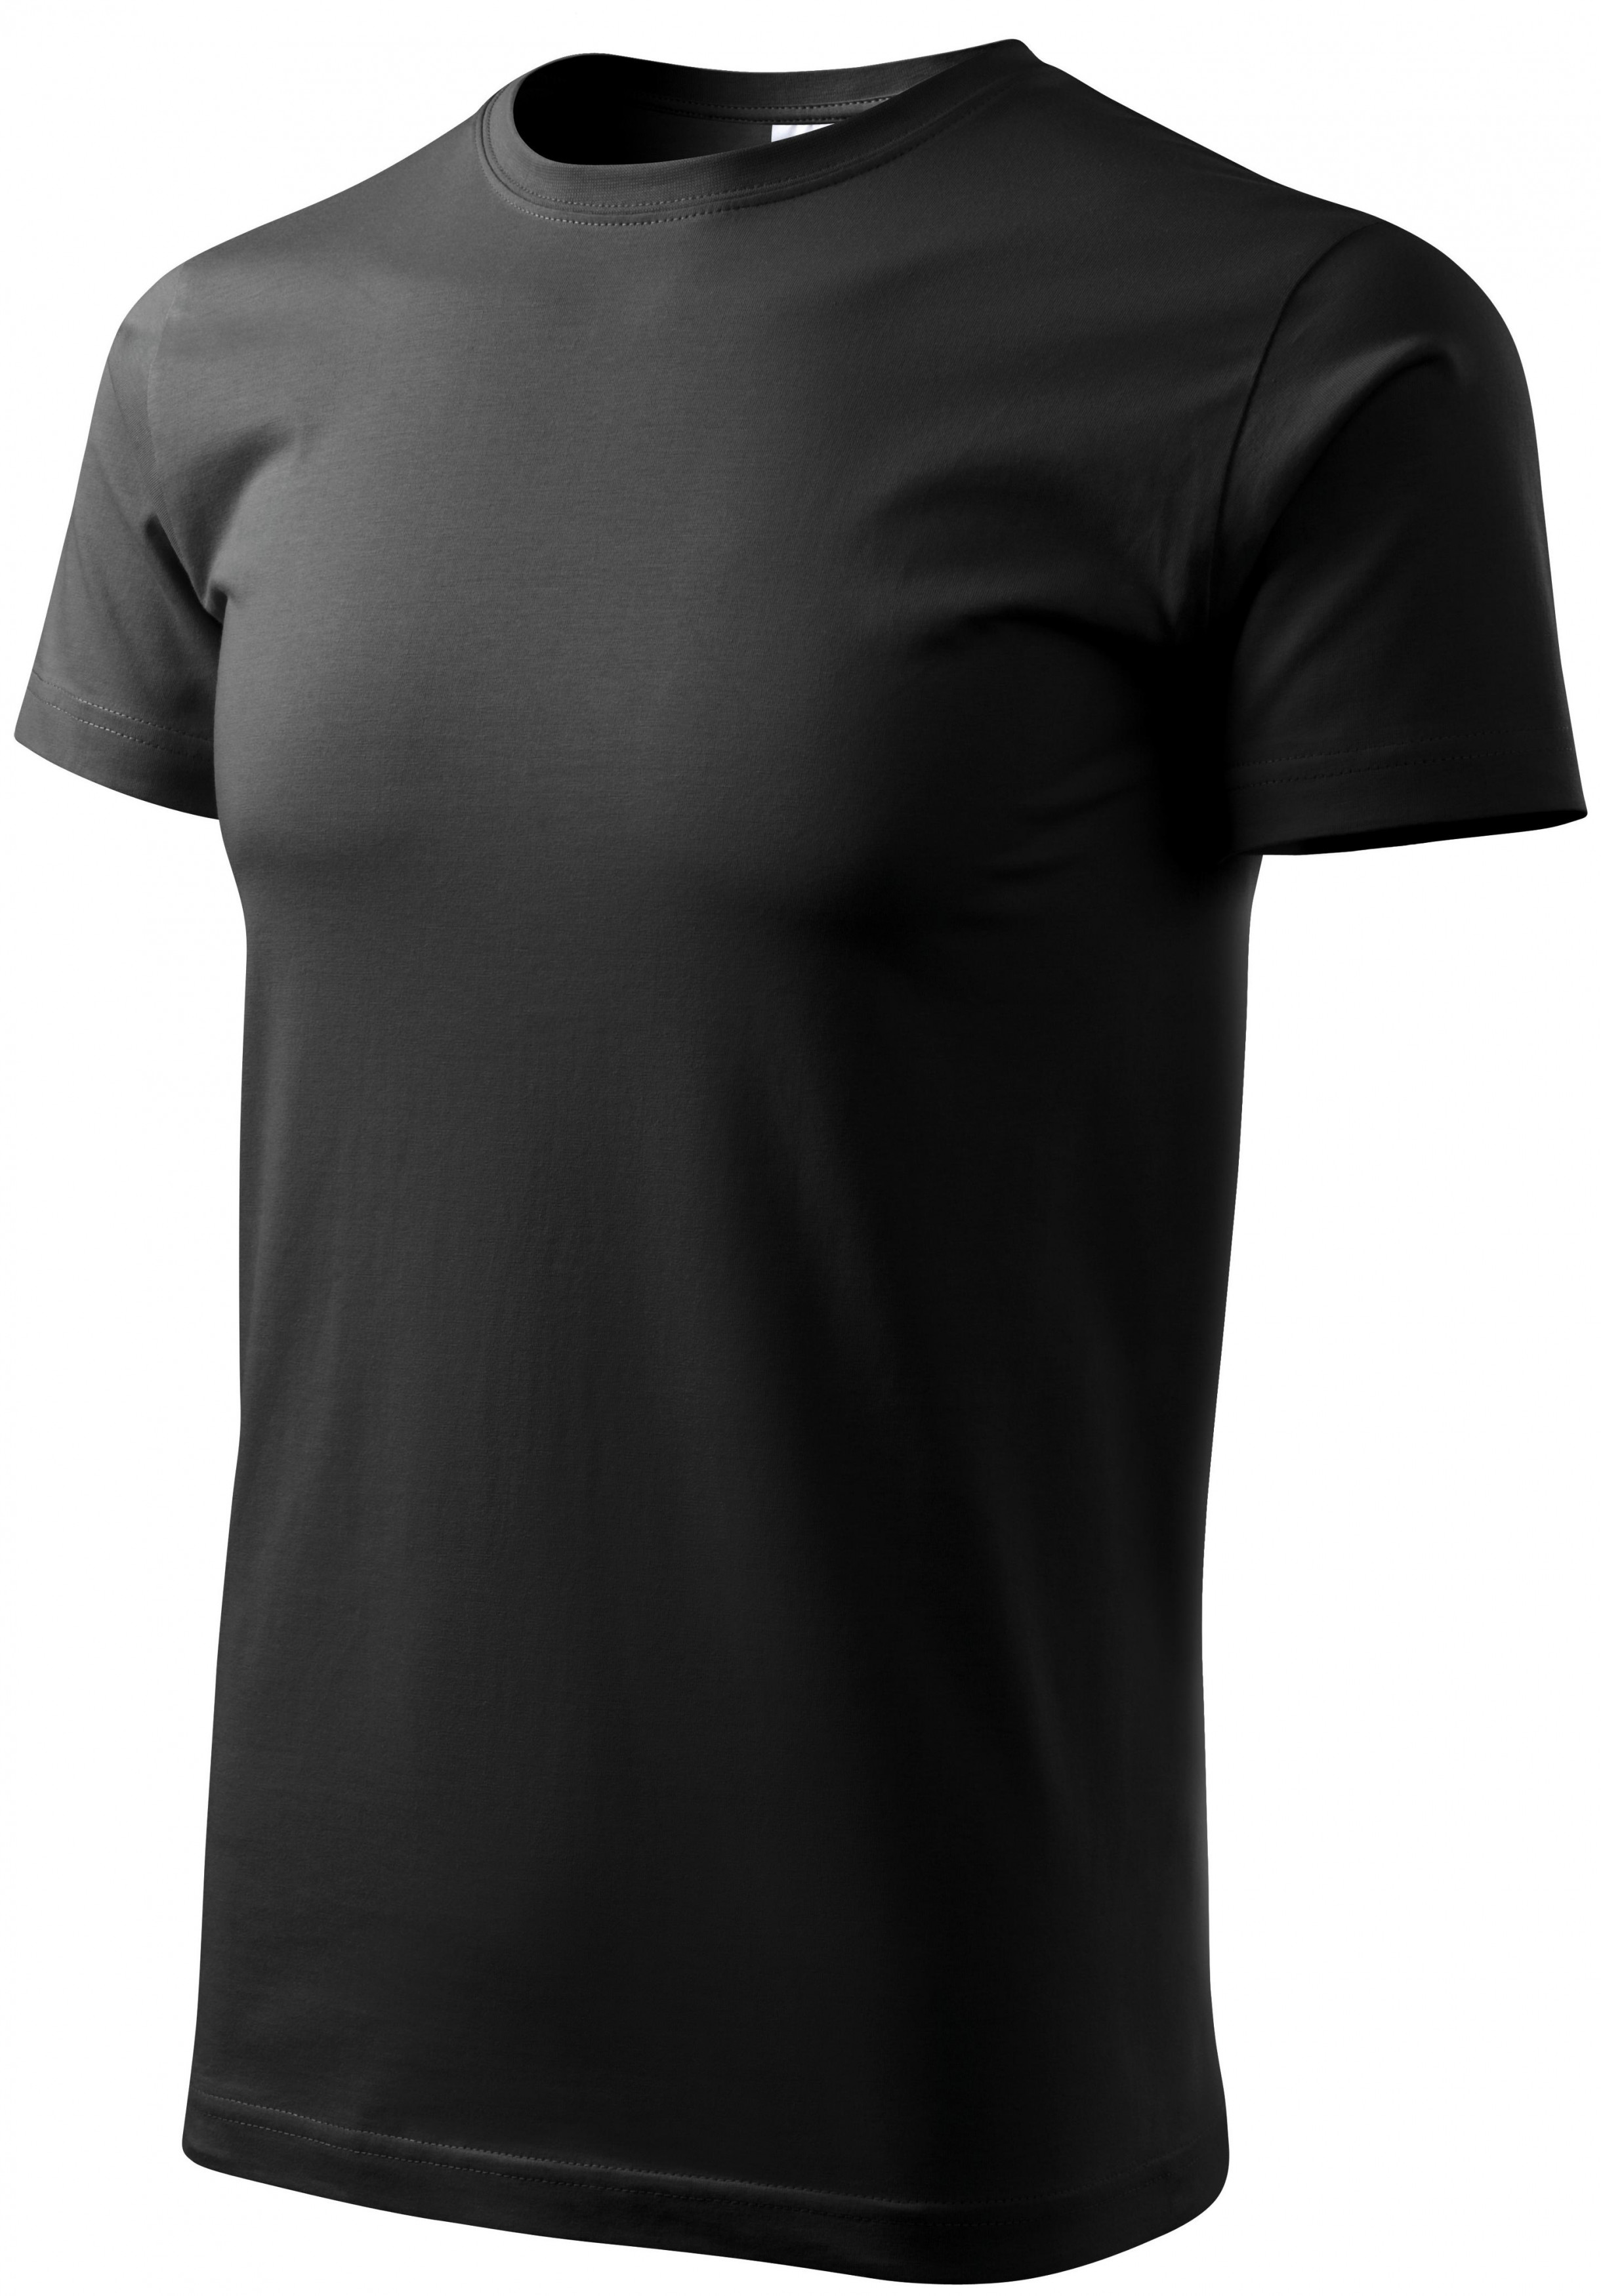 Tričko vyššej gramáže unisex, čierna, XL